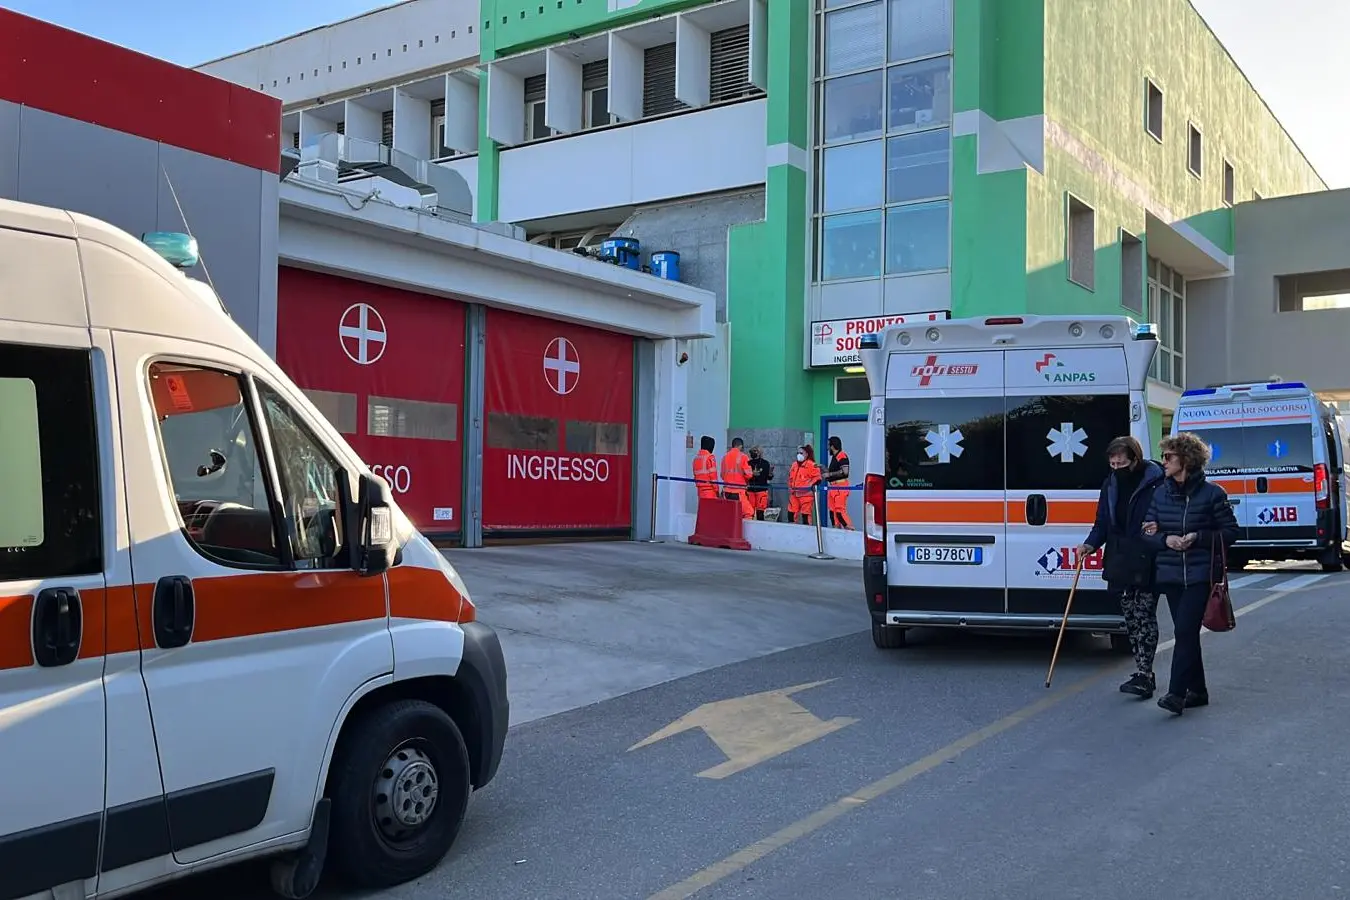 Le ambulanze all'esterno del Policlinico (L'Unione Sarda)